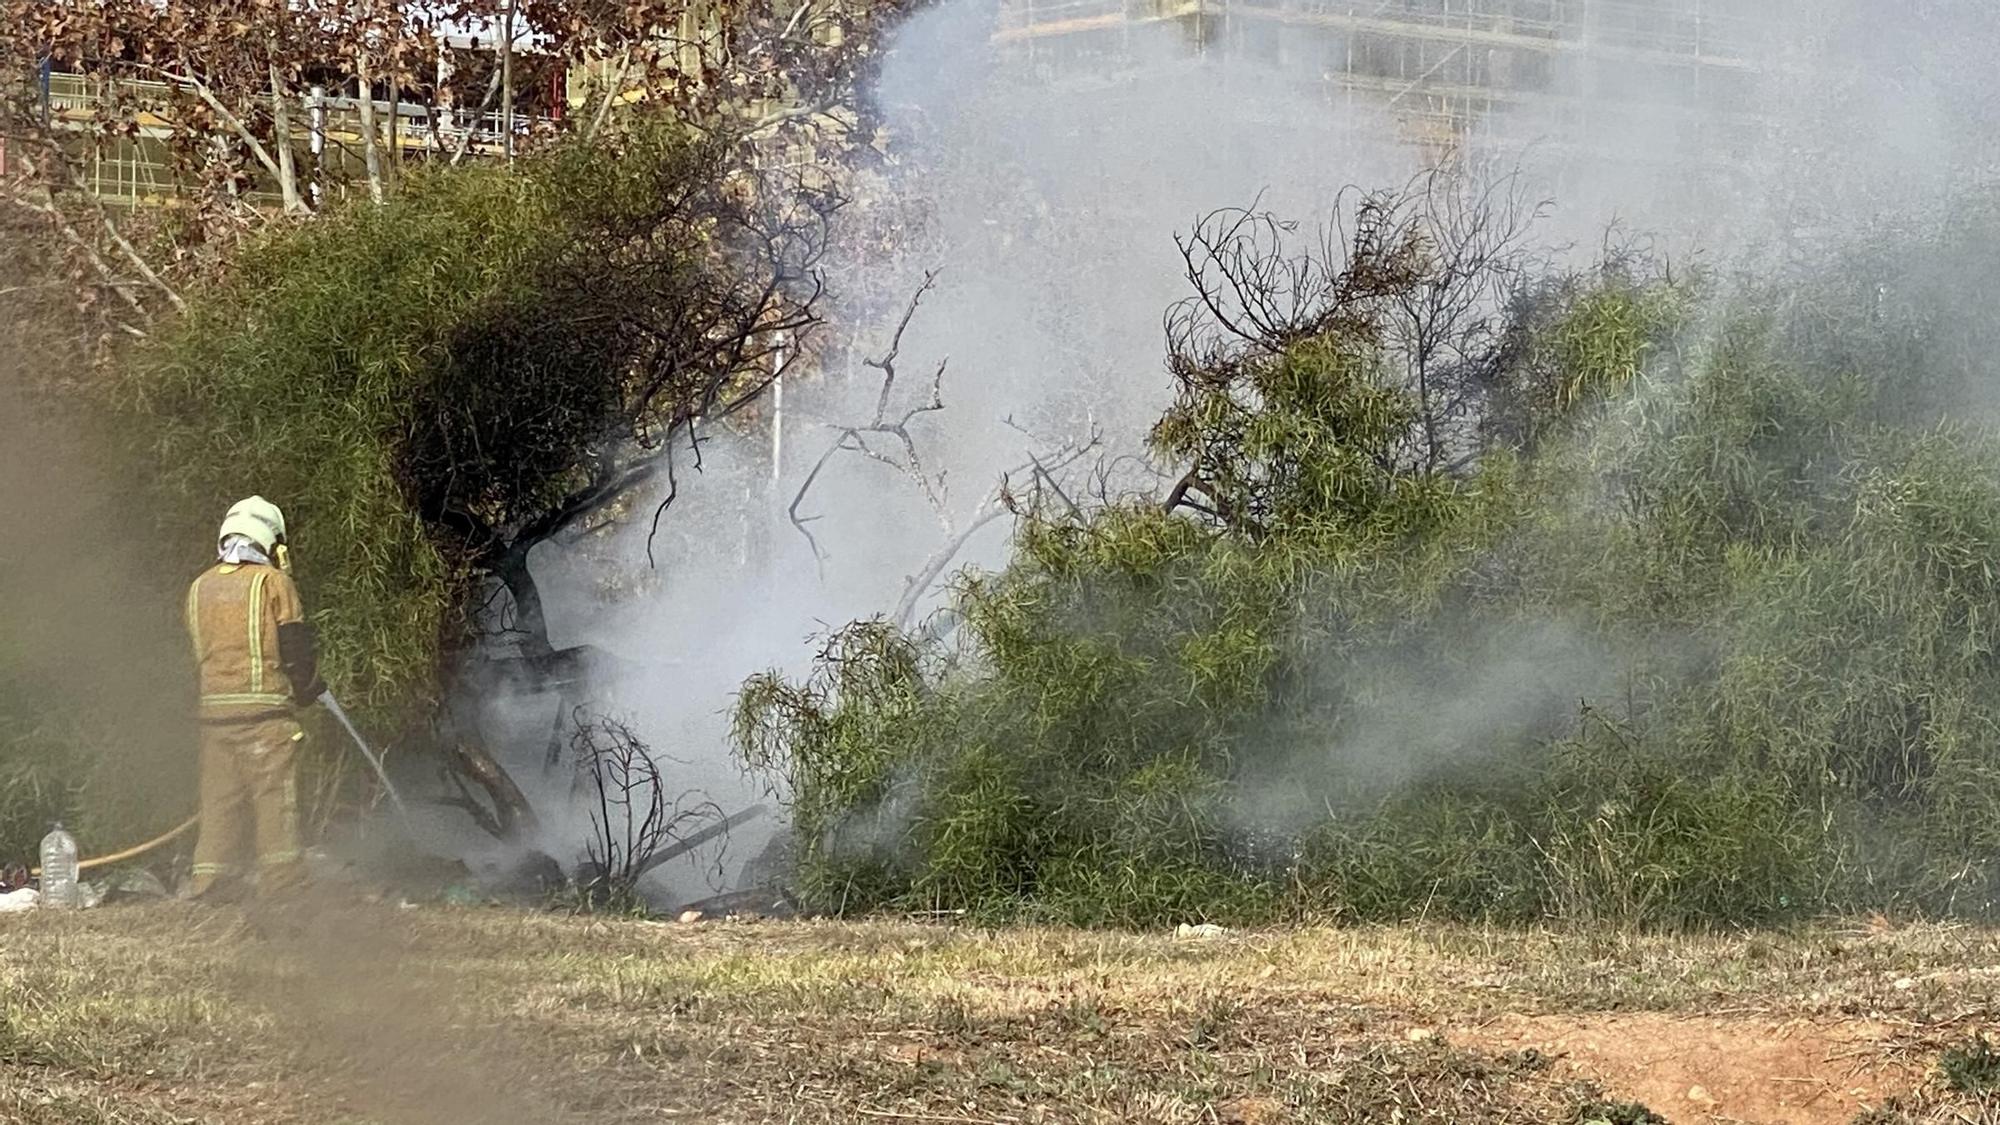 Incendios en Palma: Las fotos del fuego que ha calcinado una chabola en Palma, en el barrio de Nou Llevant